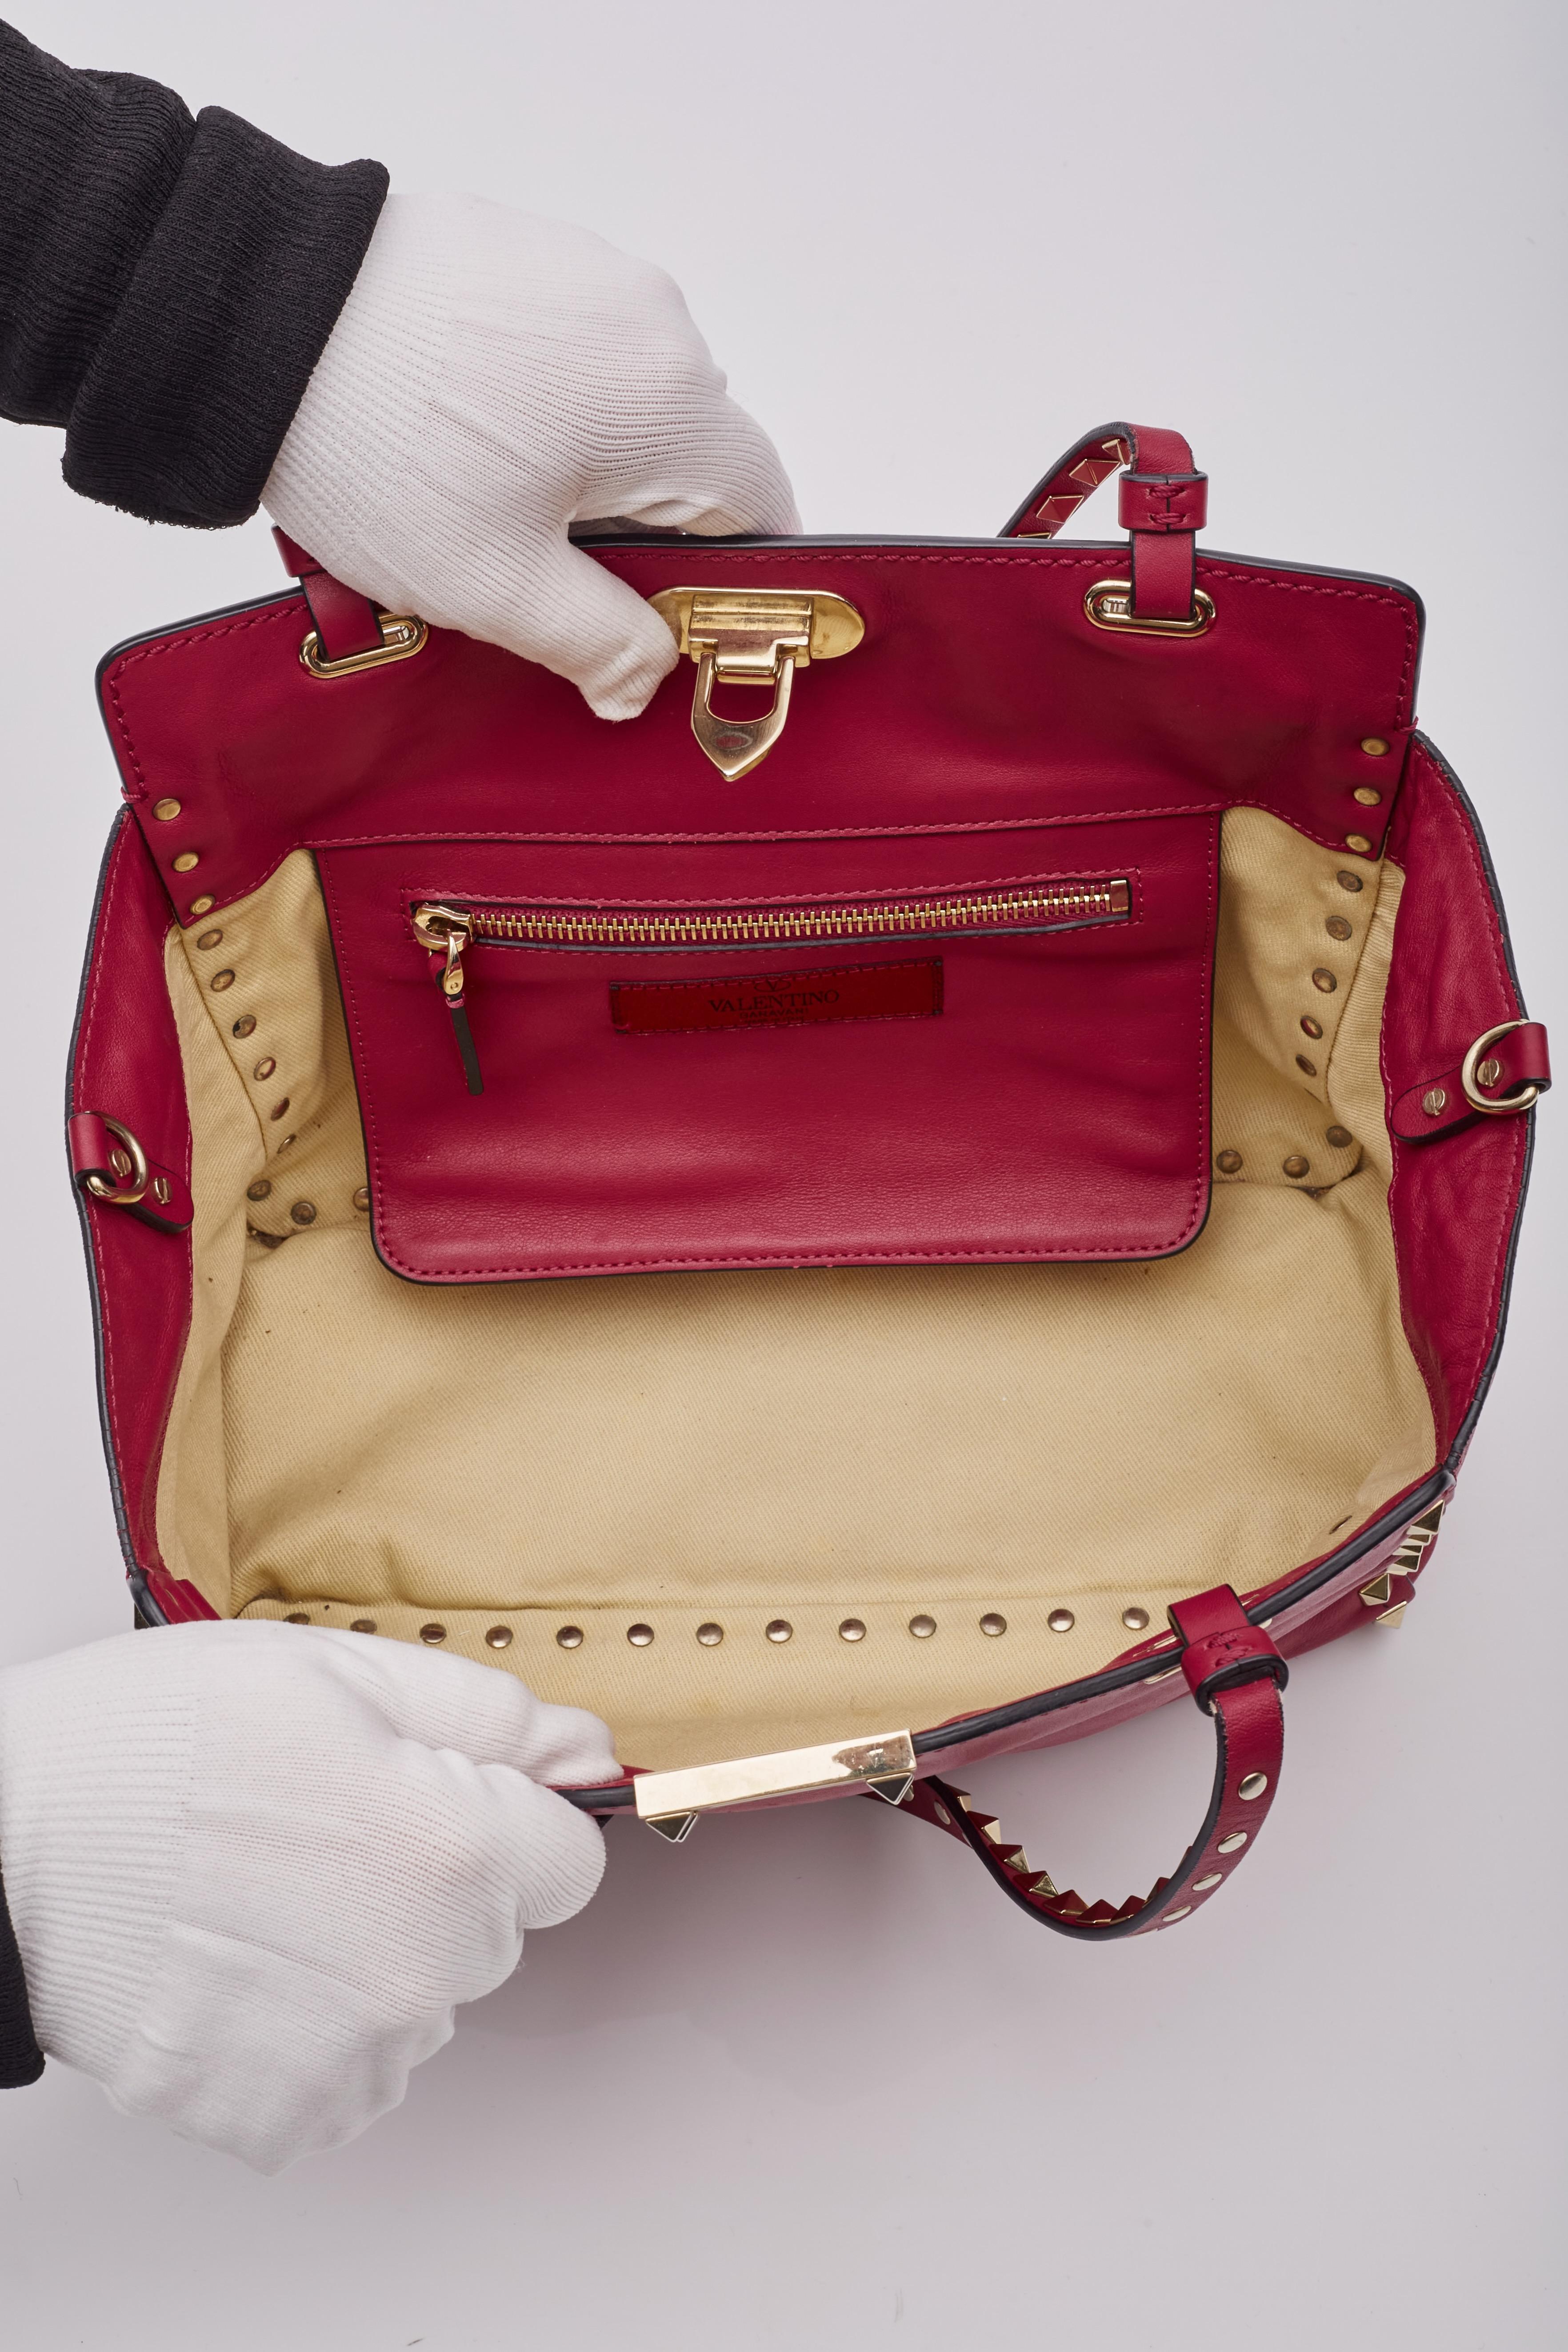 Valentino Garavani Red Leather Rockstud Shoulder Bag For Sale 3